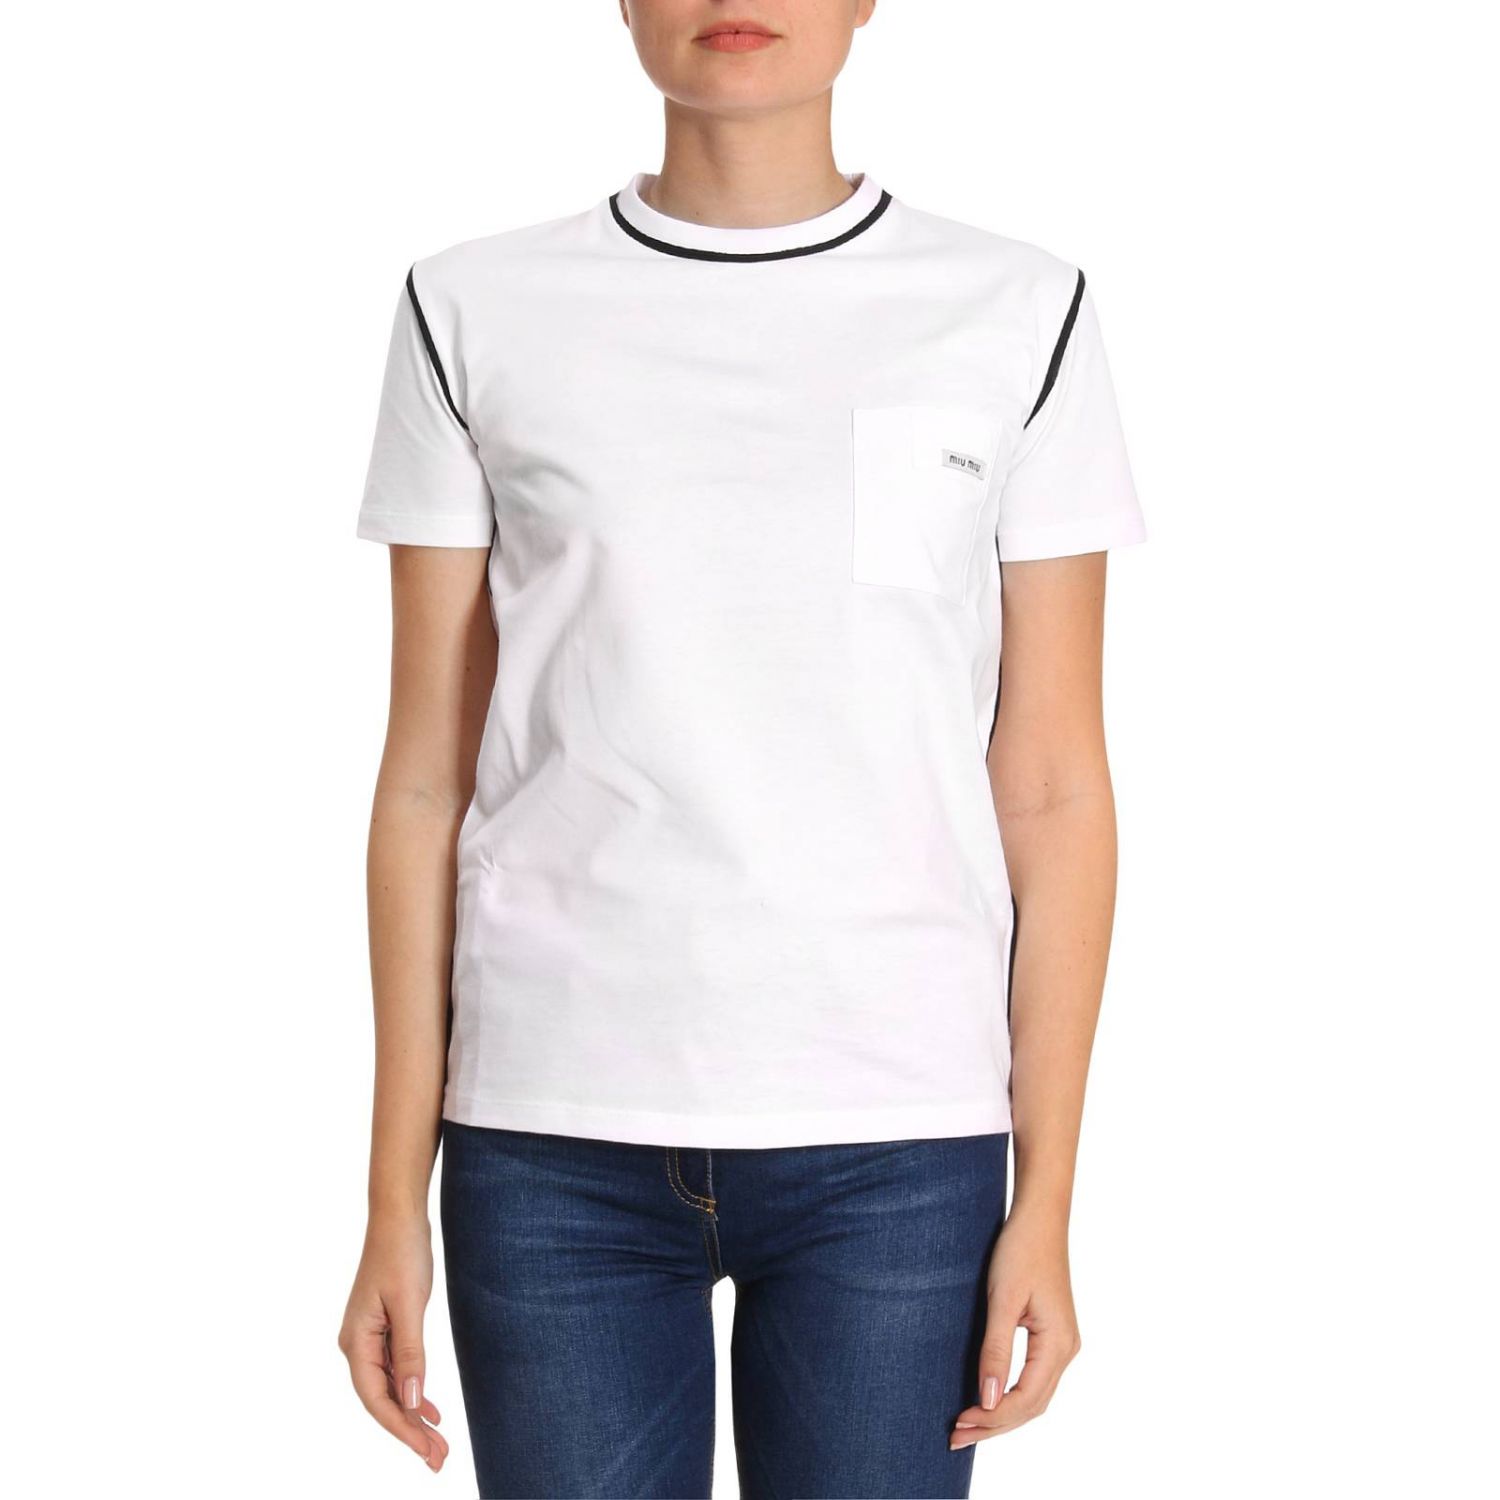 MIU MIU: T-shirt women | T-Shirt Miu Miu Women White | T-Shirt Miu Miu ...